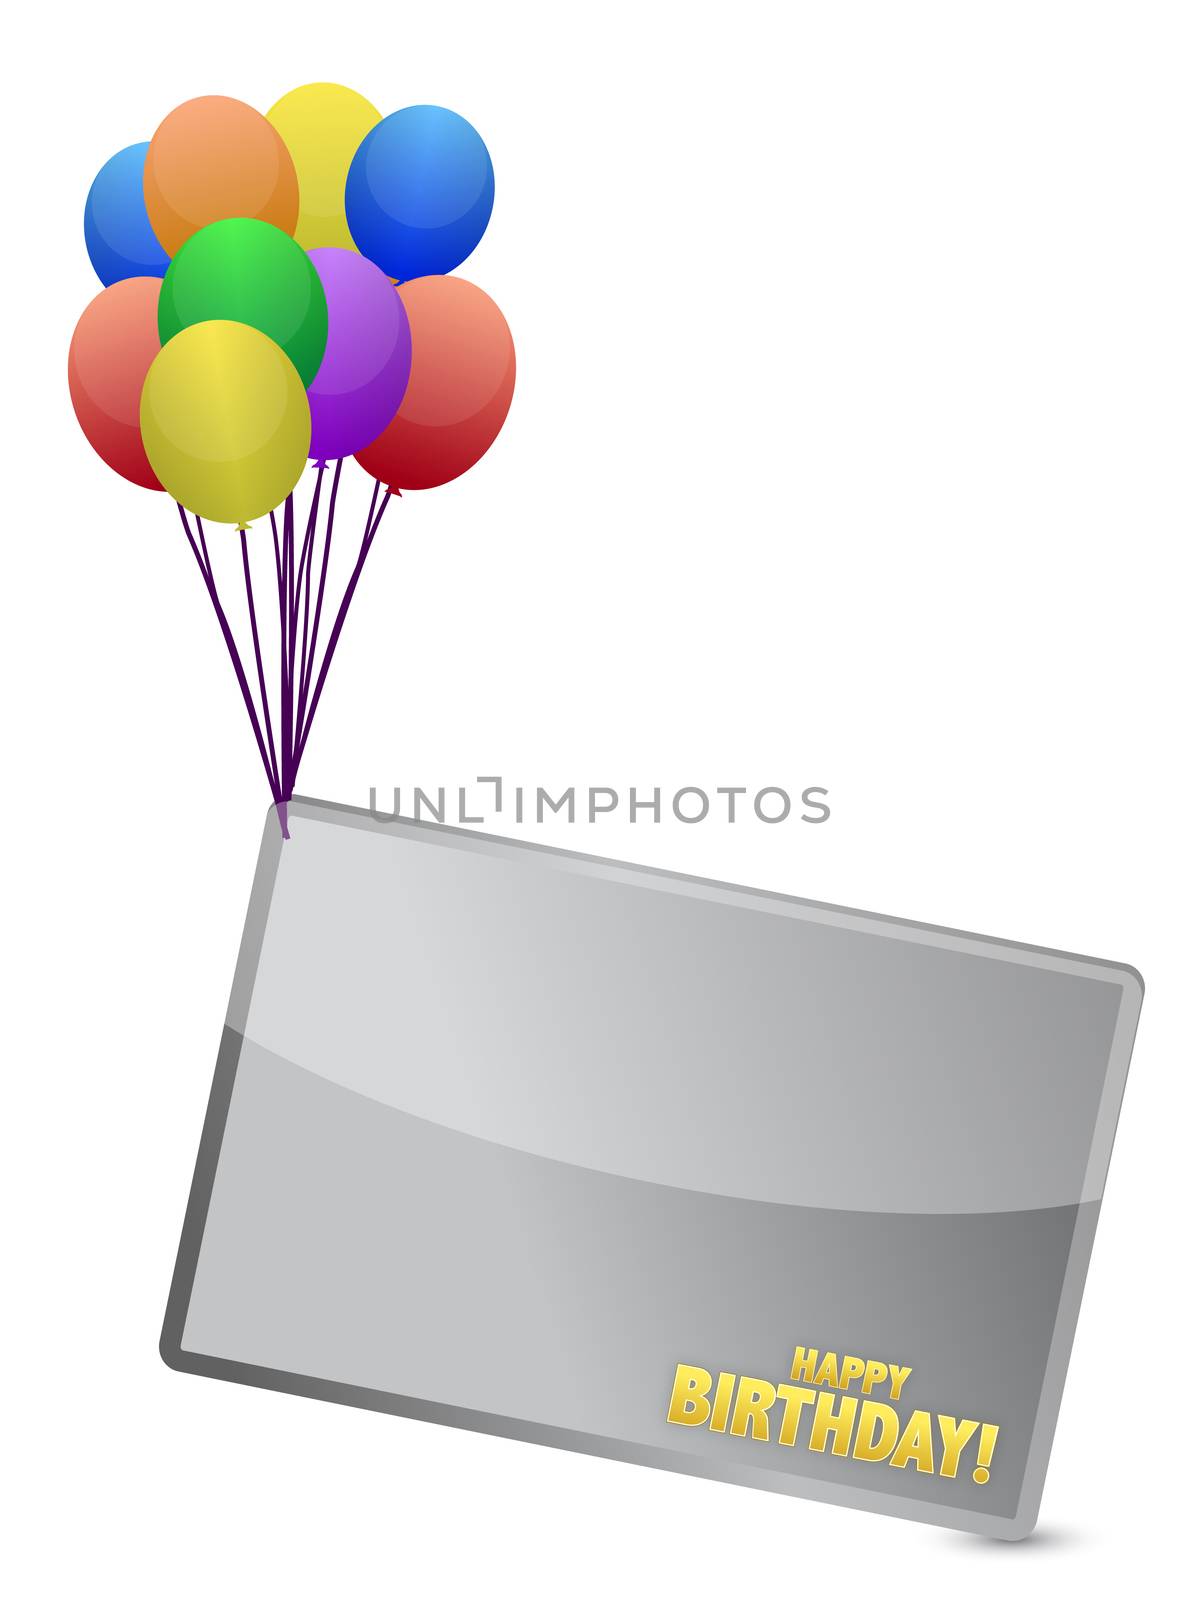 Birthday balloon banner illustration design over white